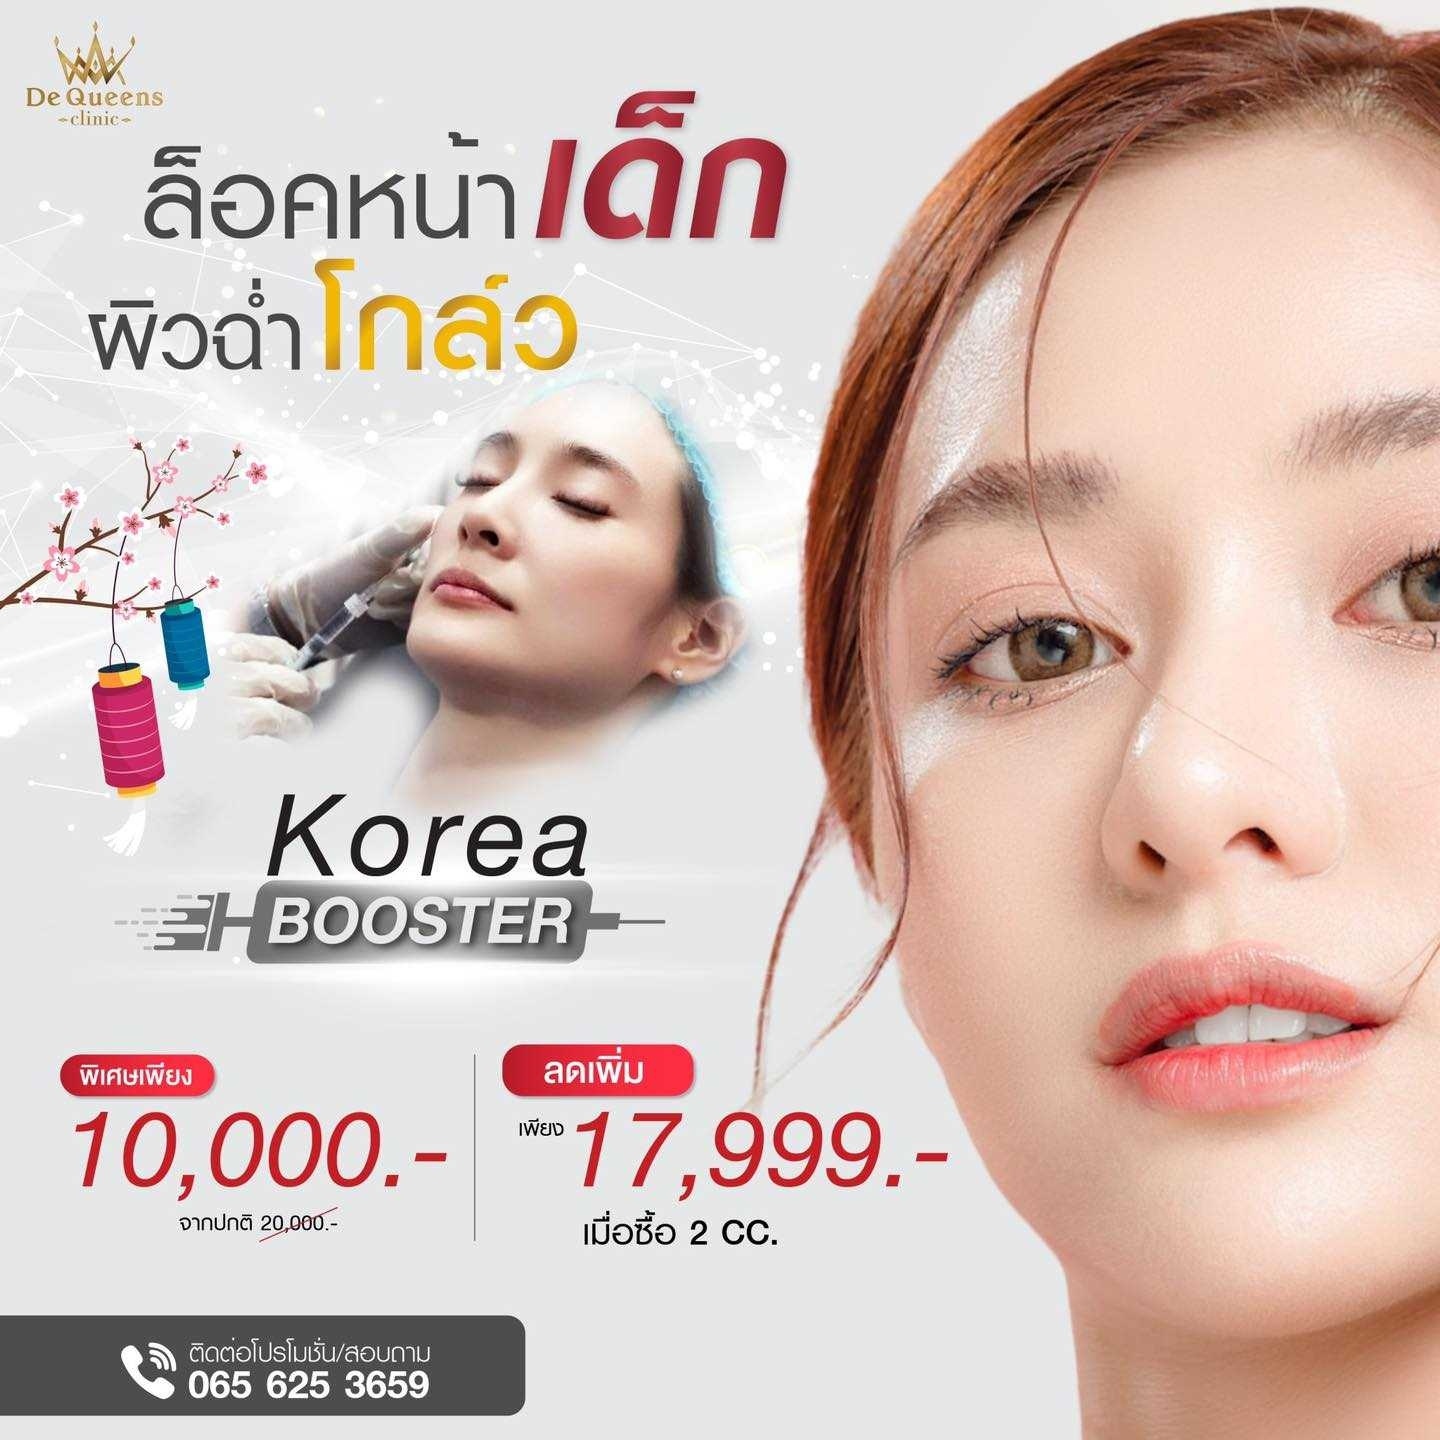 Korea Booster พิเศษเพียง 10,000 บาท